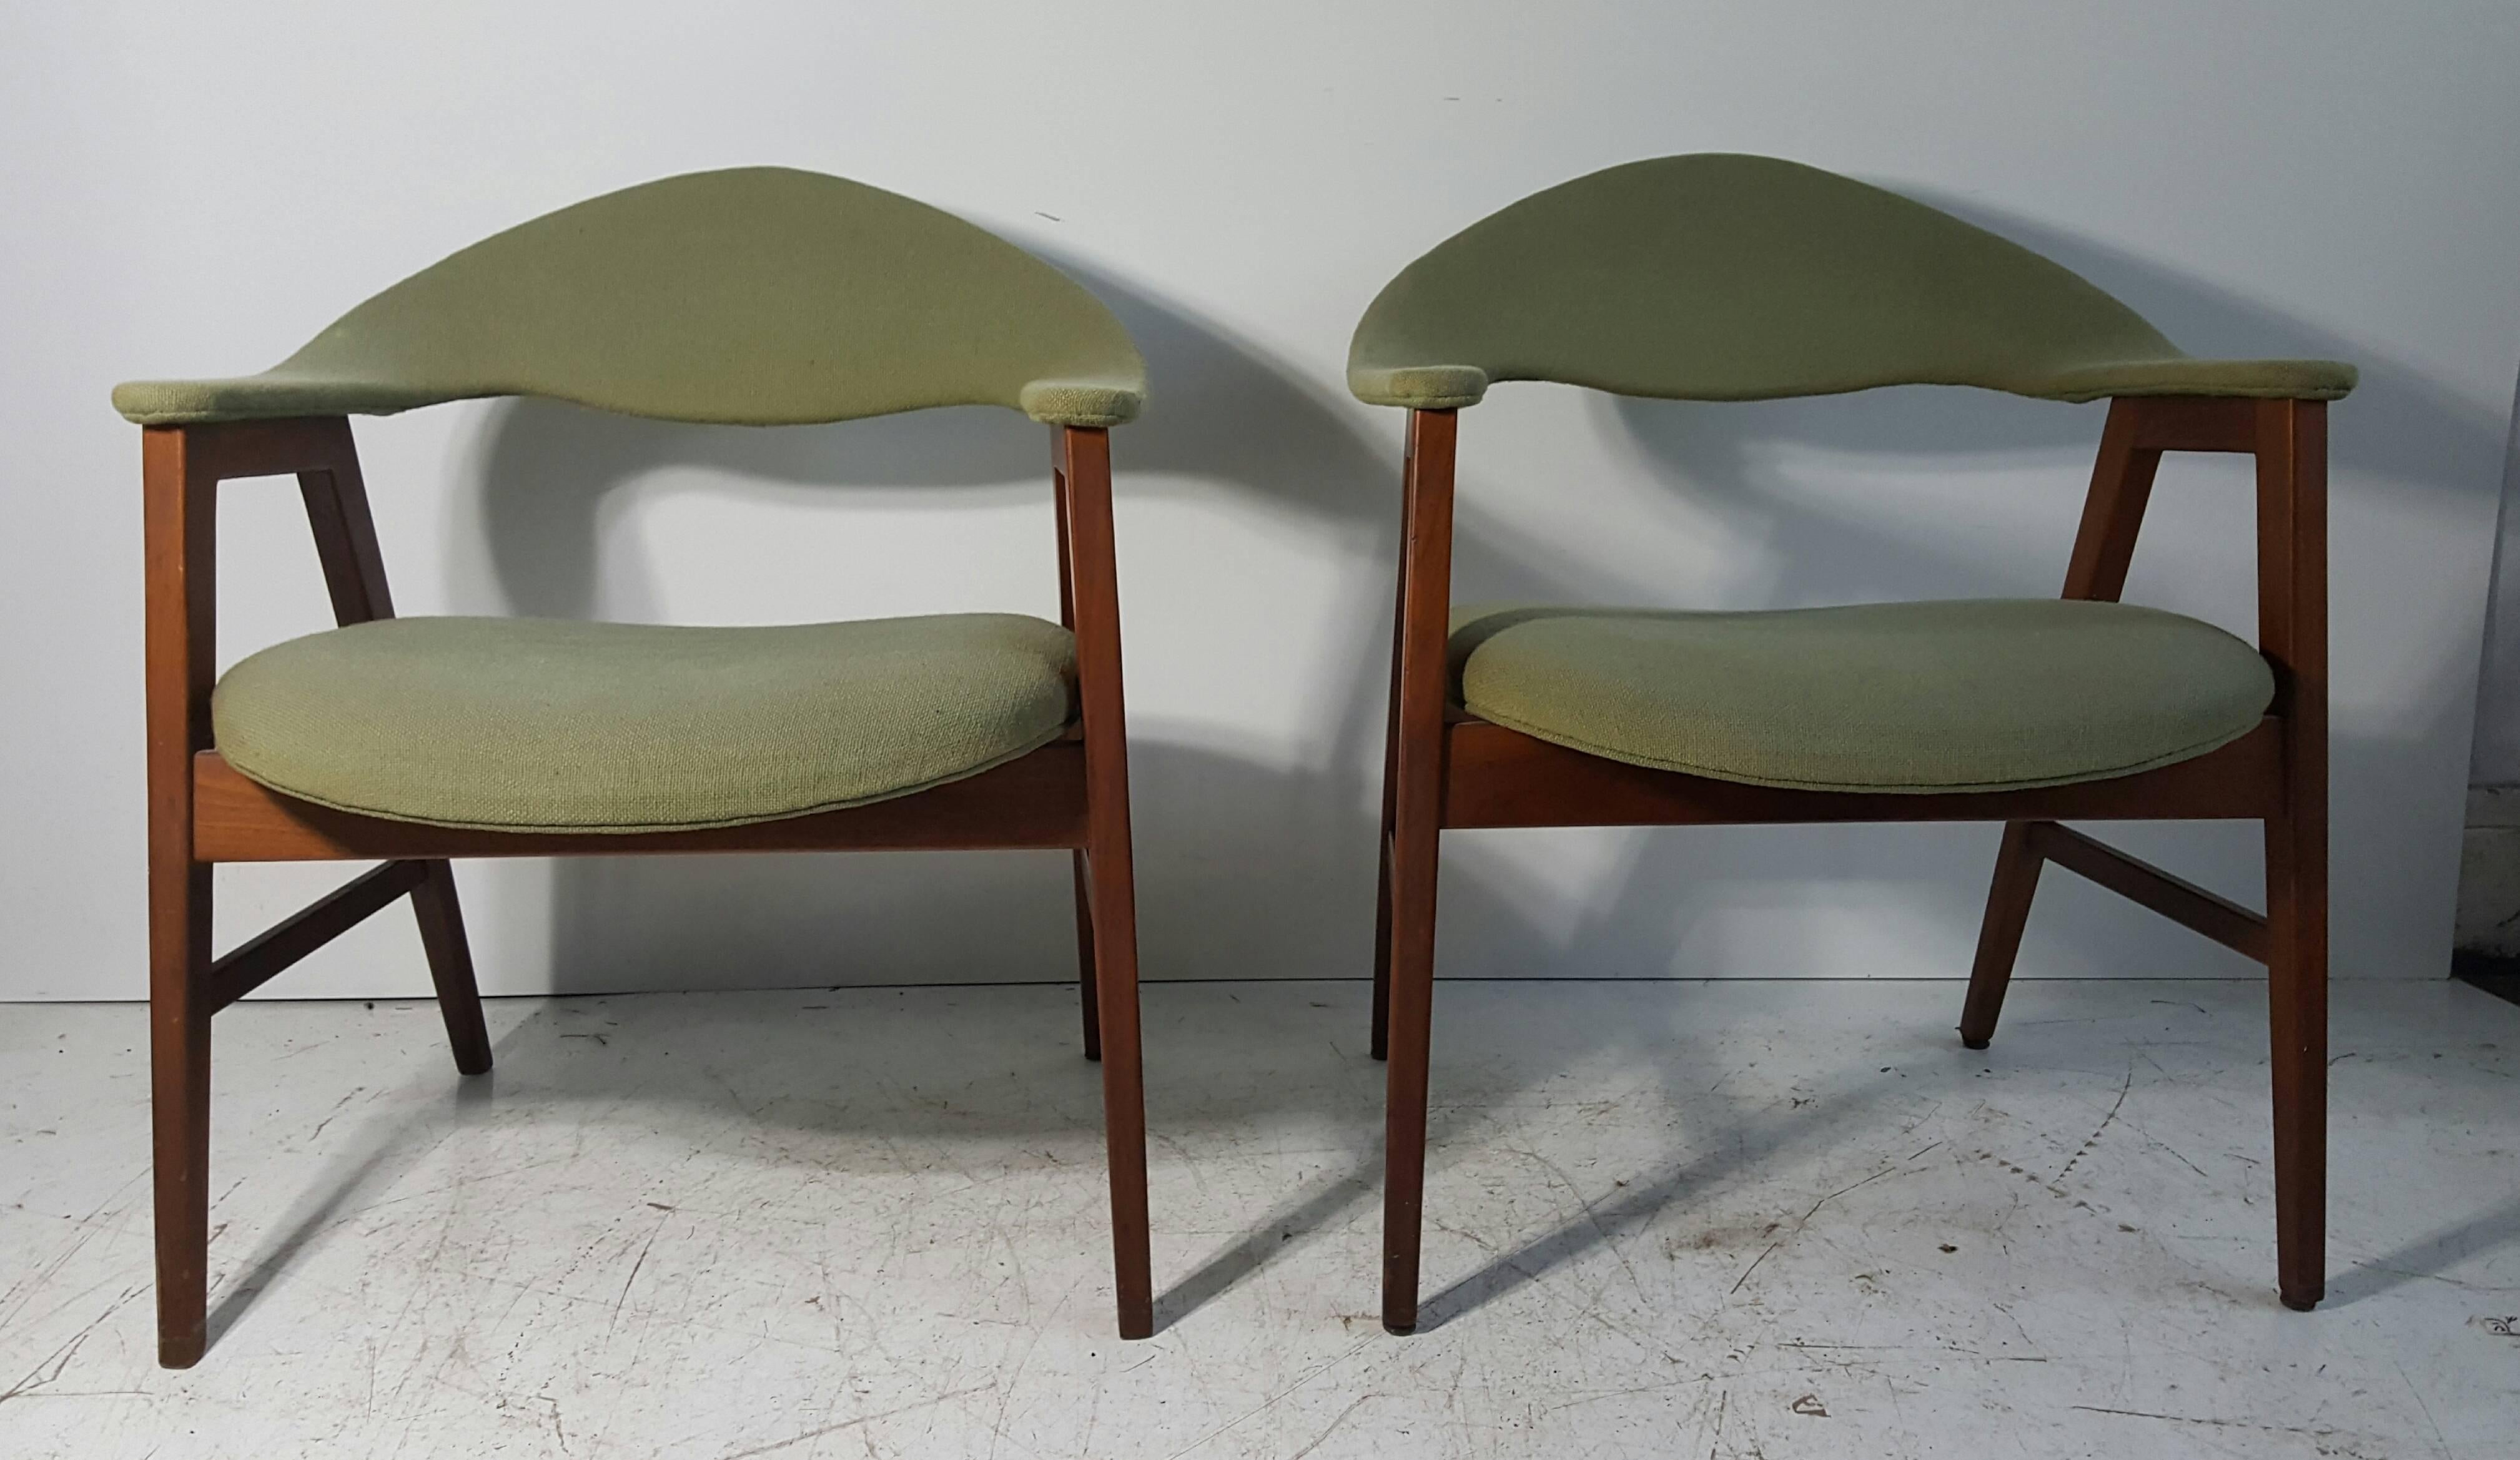 Klassisches Paar moderne dänische Sessel, Rahmen und Polsterung aus Teakholz. Atemberaubende Linien, Design... behält ursprünglichen grünen Wollstoff, brauchbar, aber wäre fabelhaft neu gepolstert werden. Äußerst komfortabel.